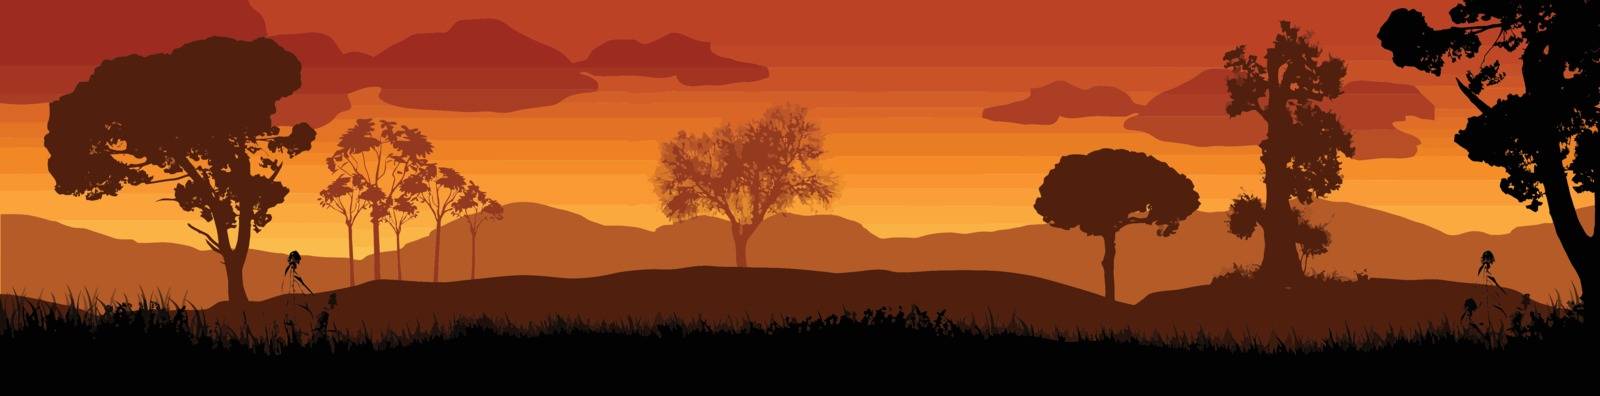 Beautiful sunset in savanna landscape, vector illustration